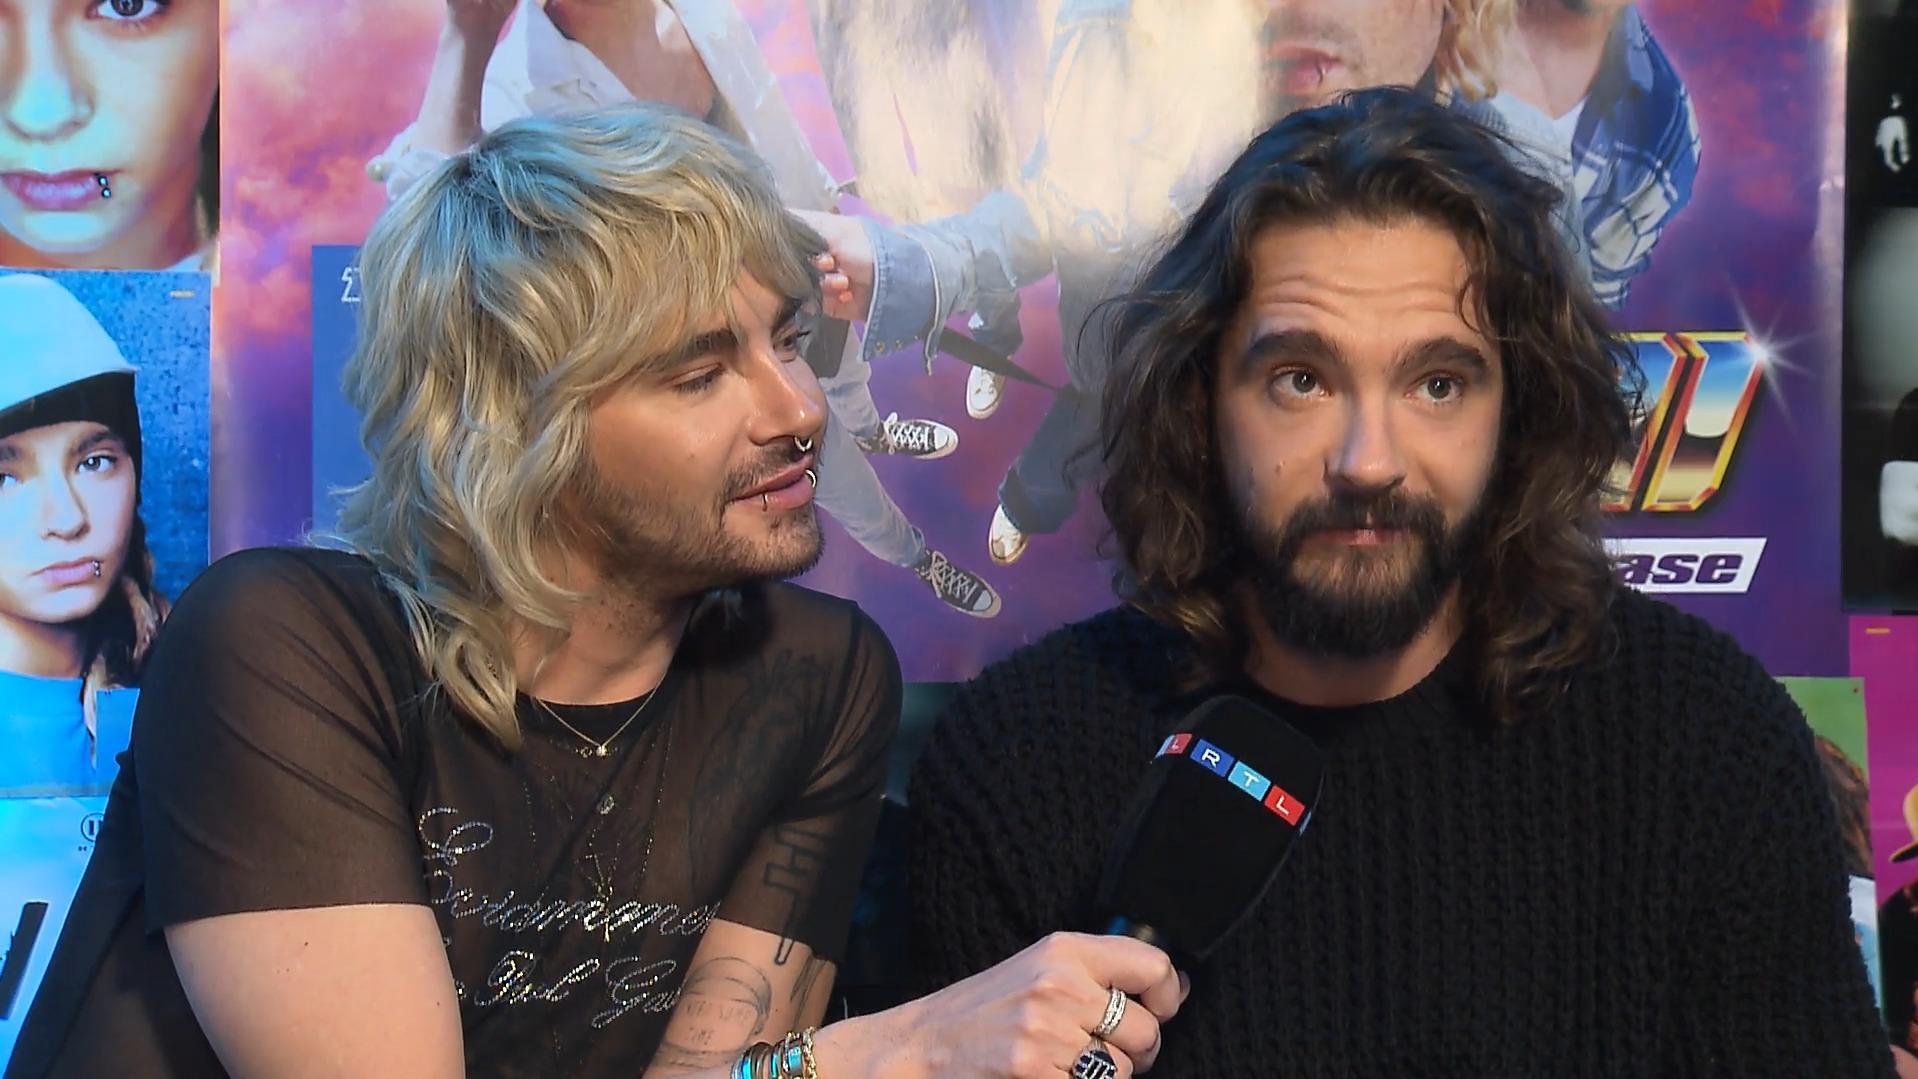 Bill und Tom Kaulitz im RTL-Interview. Bill lehnt sich zu Tom herüber und schaut ihn an, Tom hält ein Mikro in der Hand und guckt schüchtern nach oben.